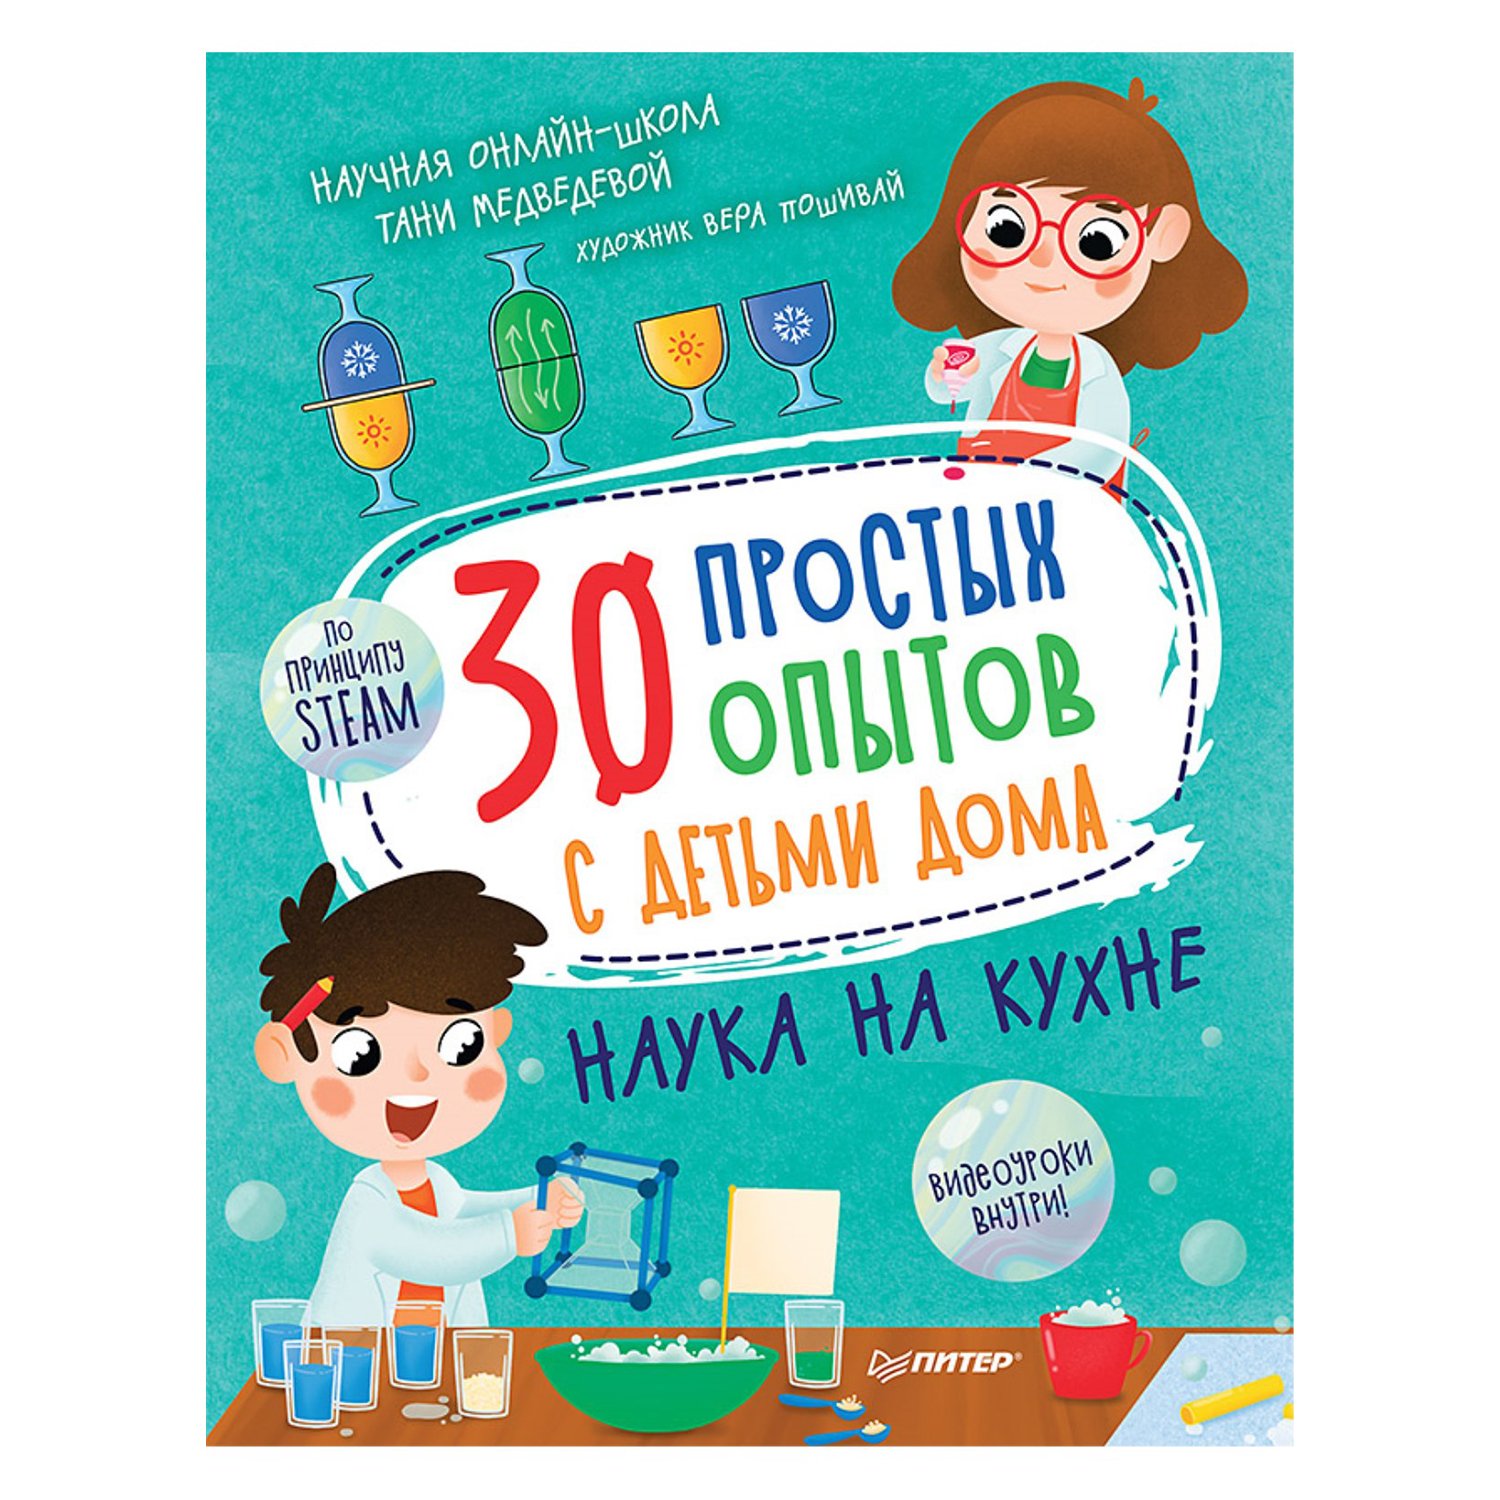 Книга ПИТЕР 30 простых опытов с детьми дома Наука на кухне - фото 1